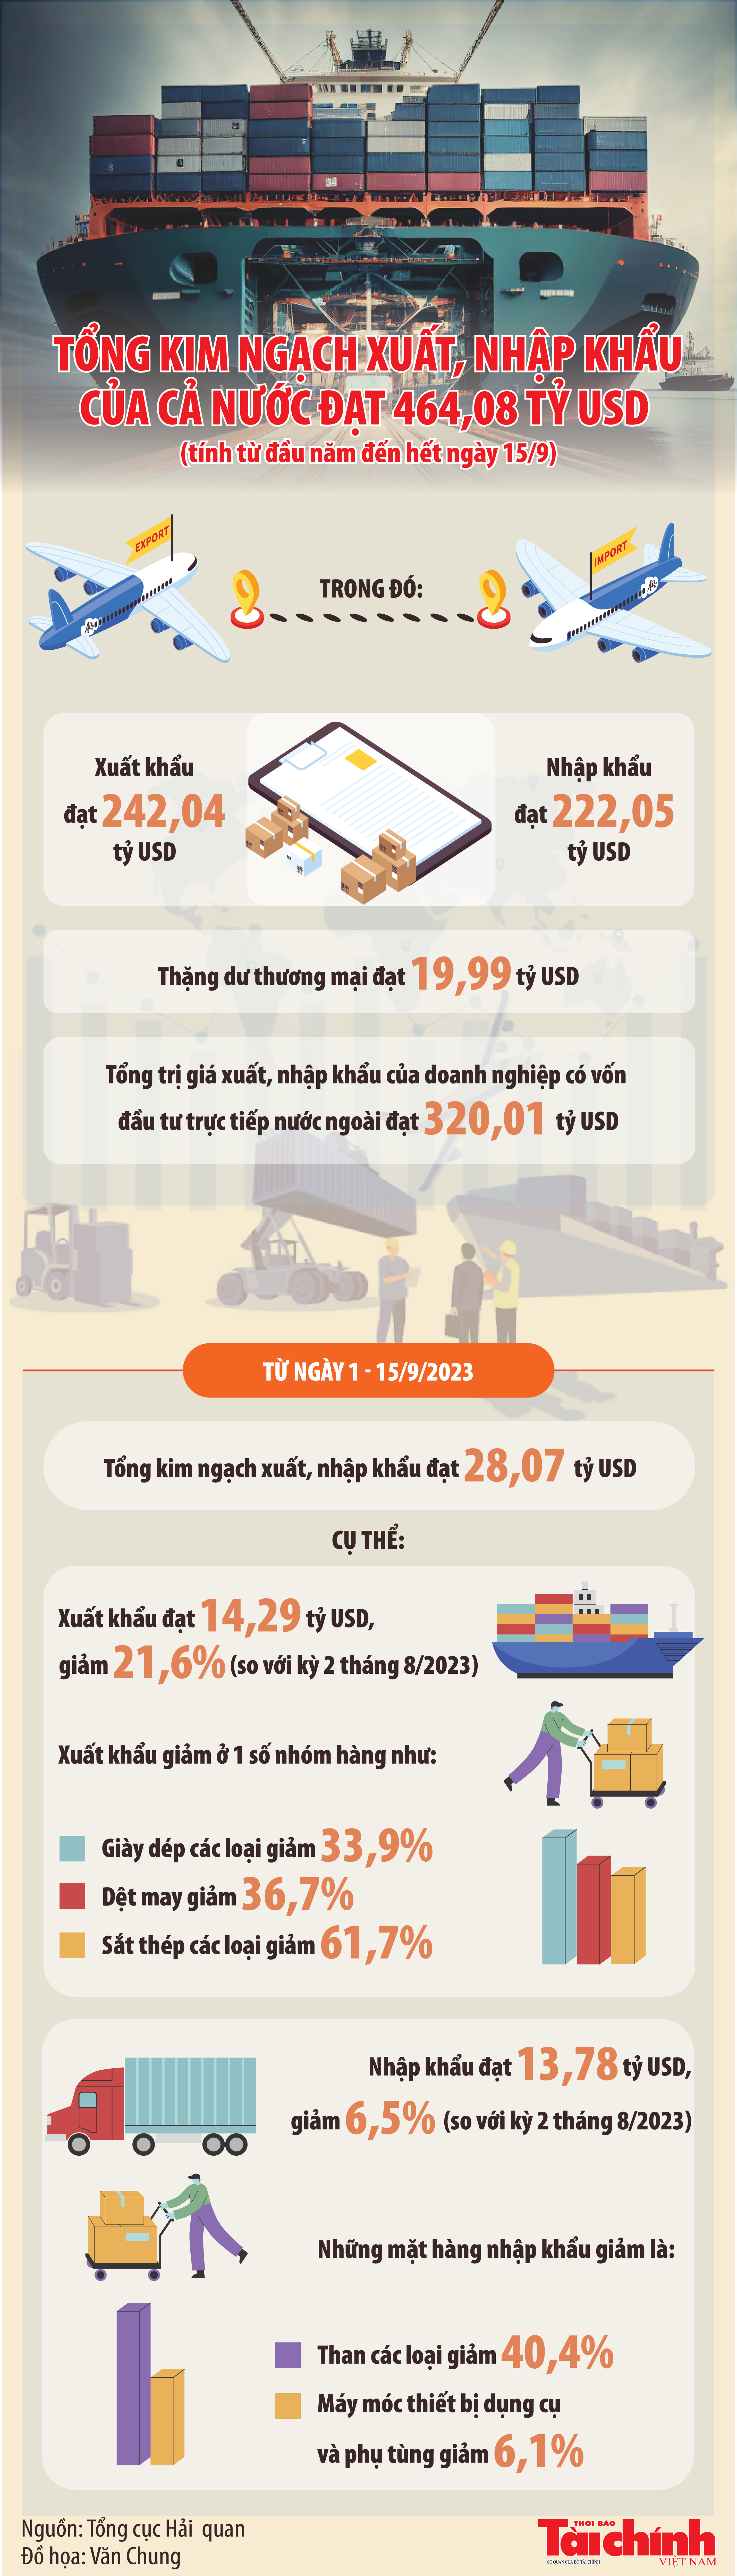 Inforgraphics: Tổng kim ngạch xuất nhập khẩu cả nước đạt 464,08 tỷ USD